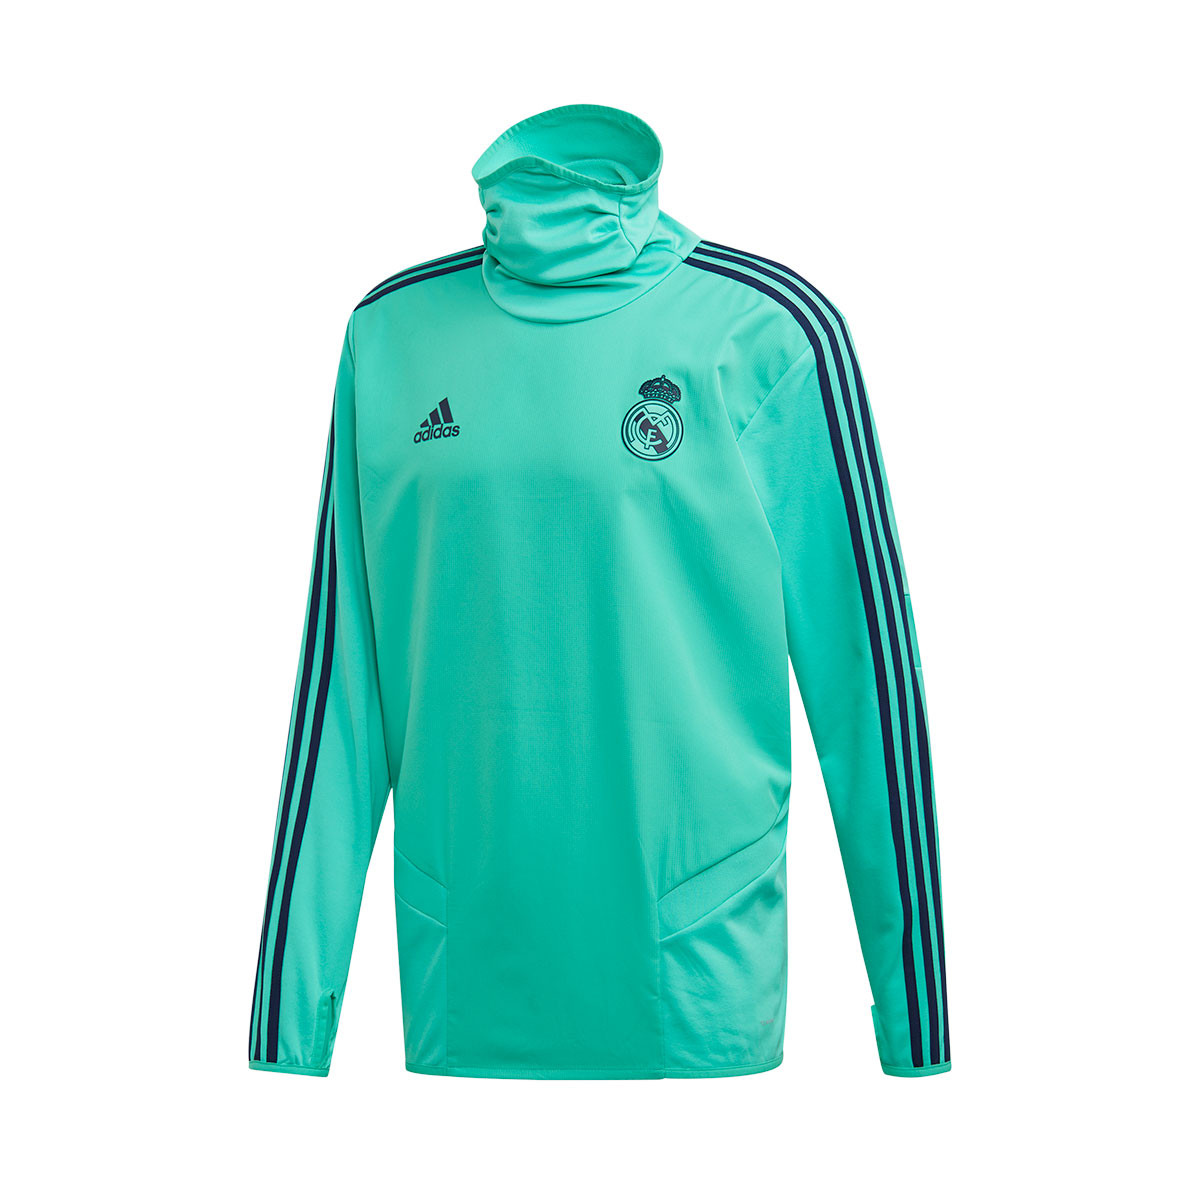 Sudadera adidas Real Madrid Warm 2019-2020 HI-Re green-Night indigo -  Tienda de fútbol Fútbol Emotion